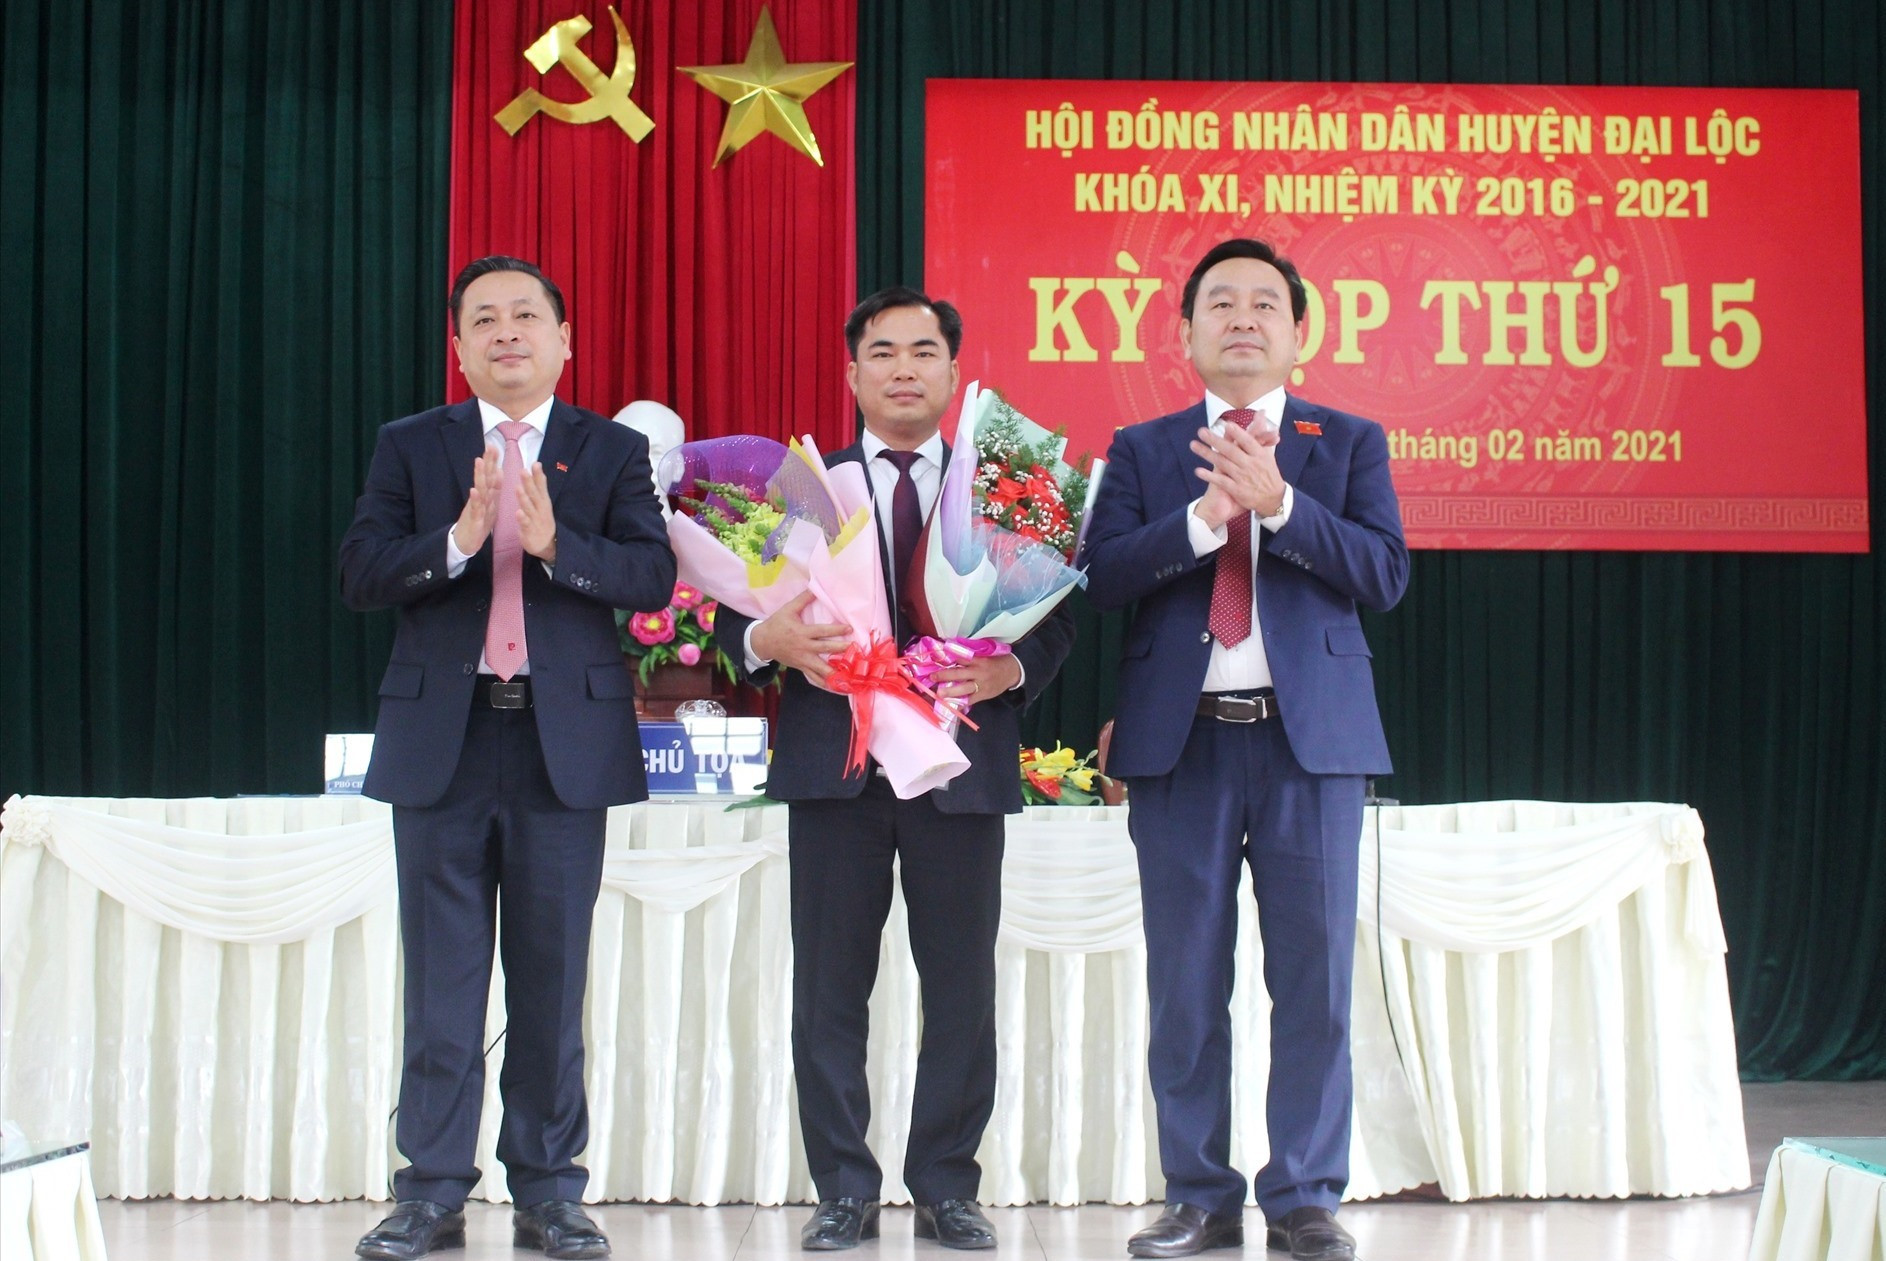 Tặng hoa chúc mừng ông Lê Văn Quang được bầu giữ chức vụ Chủ tịch UBND huyện Đại Lộc. Ảnh: NHẬT DUY